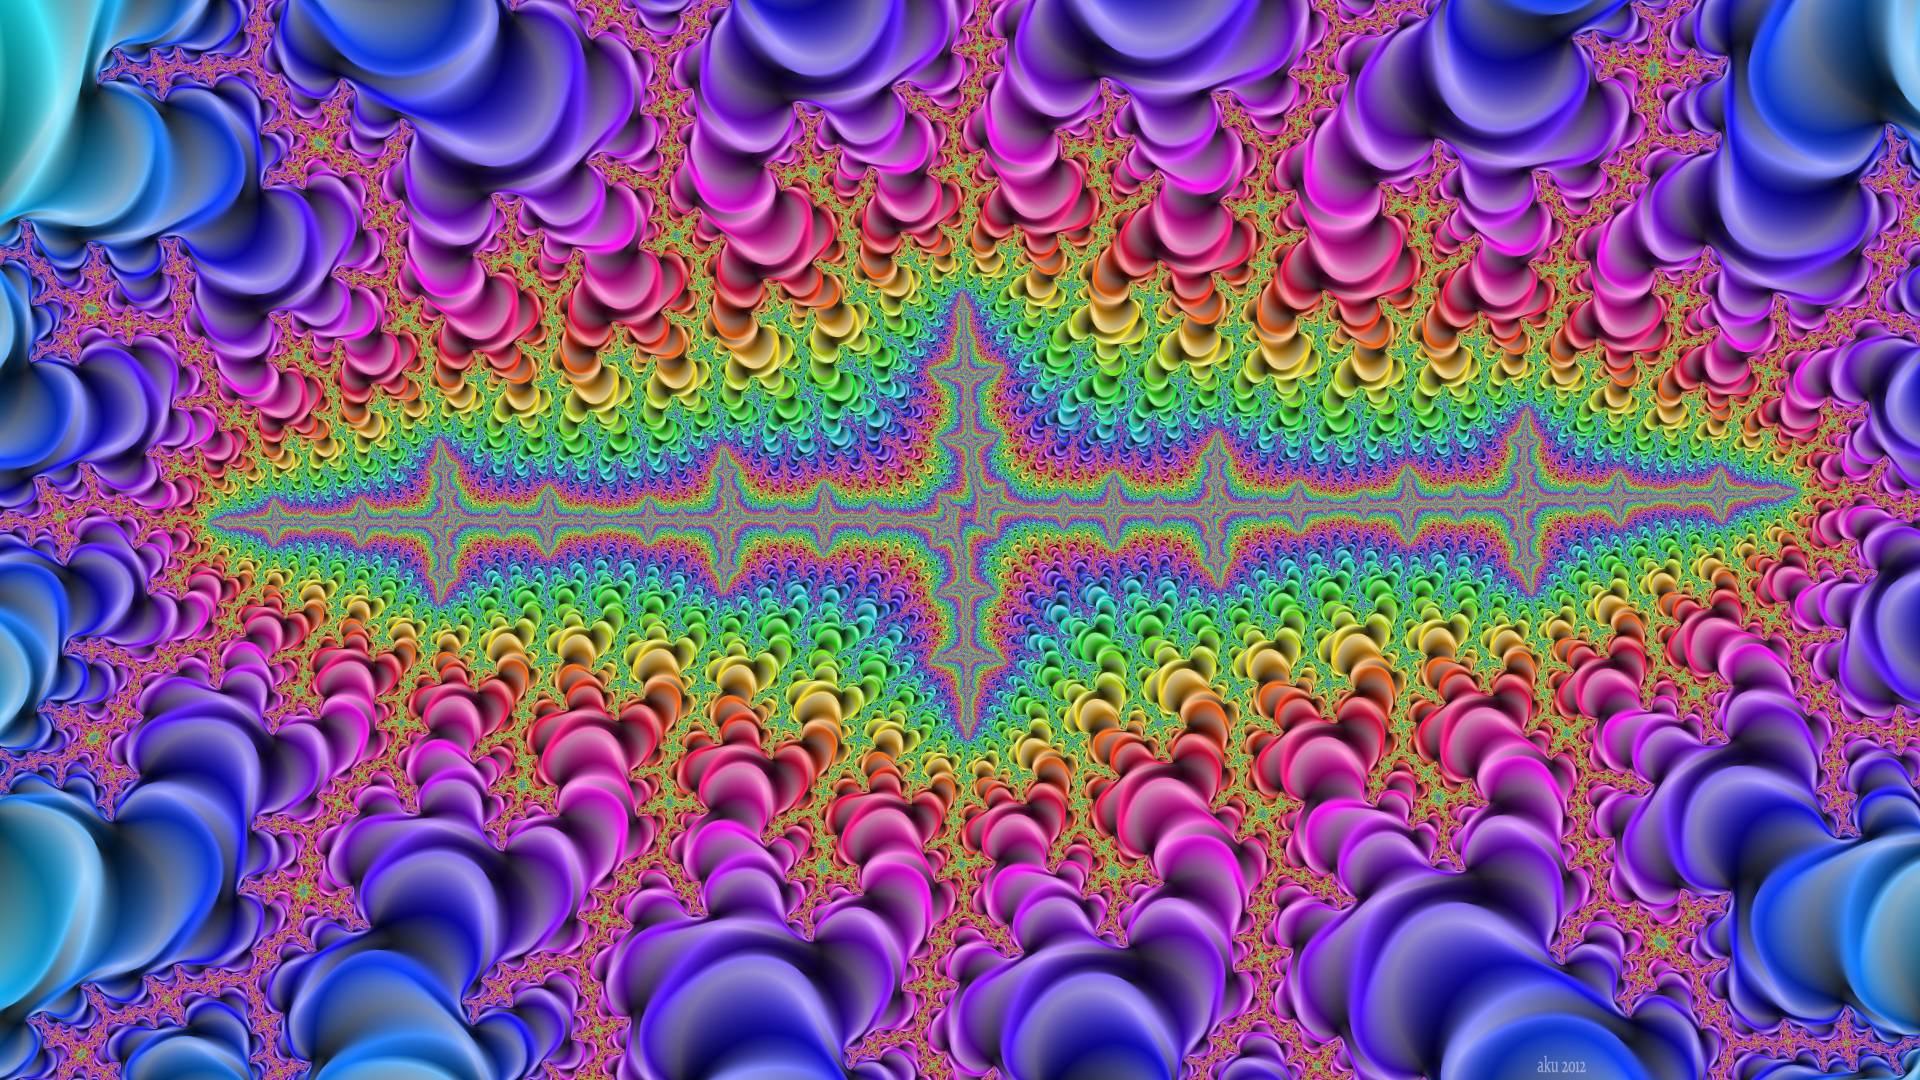 Psychedelic Computer Wallpaper, Desktop Background 1920x1080 Id